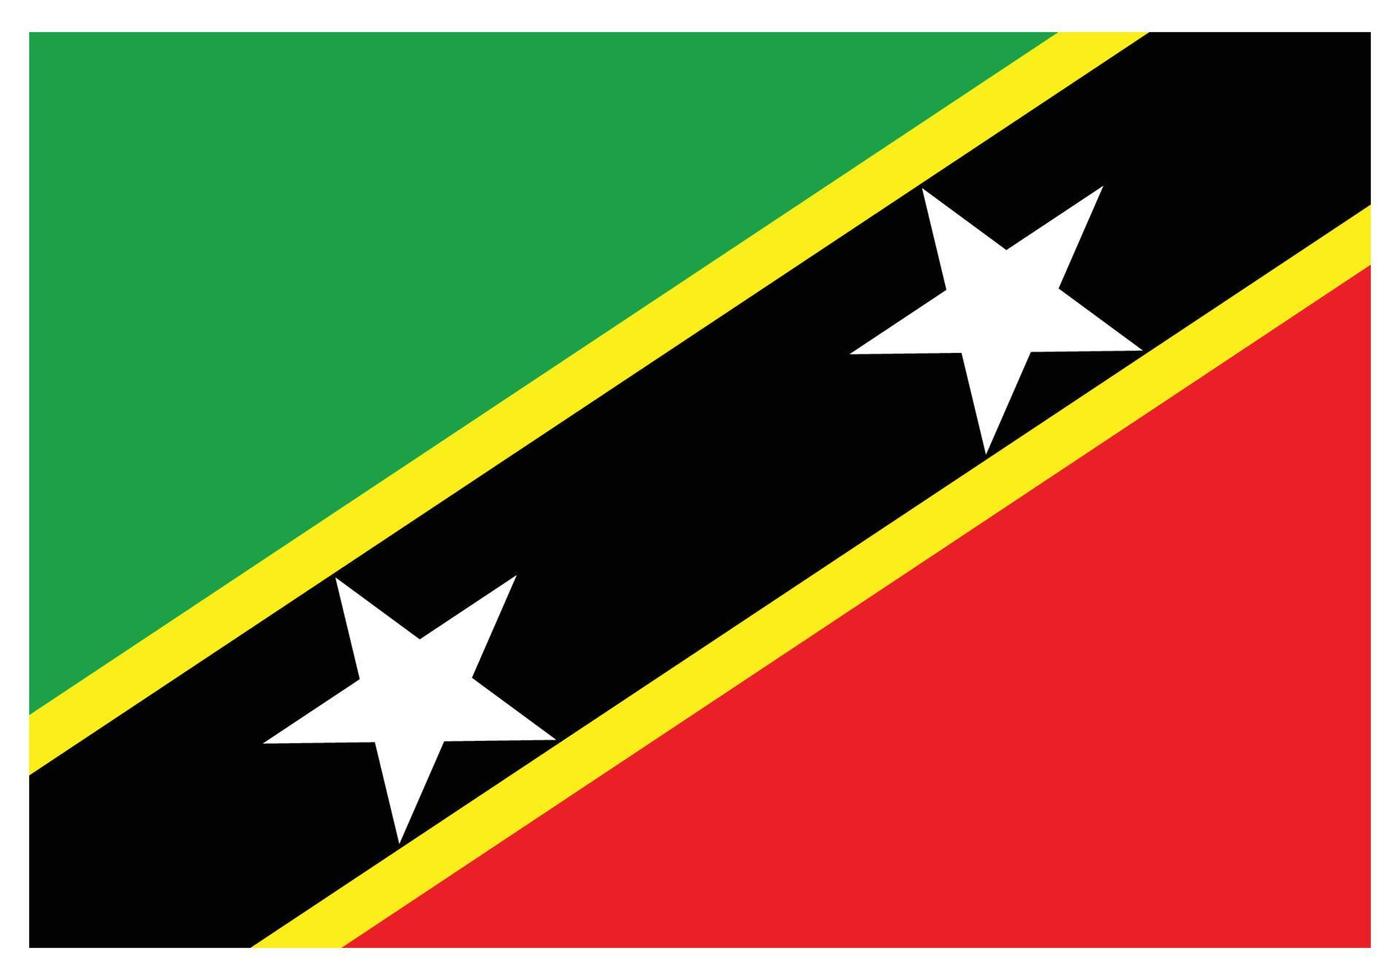 nationalflagge von st. kitts und nevis - flaches farbsymbol. vektor